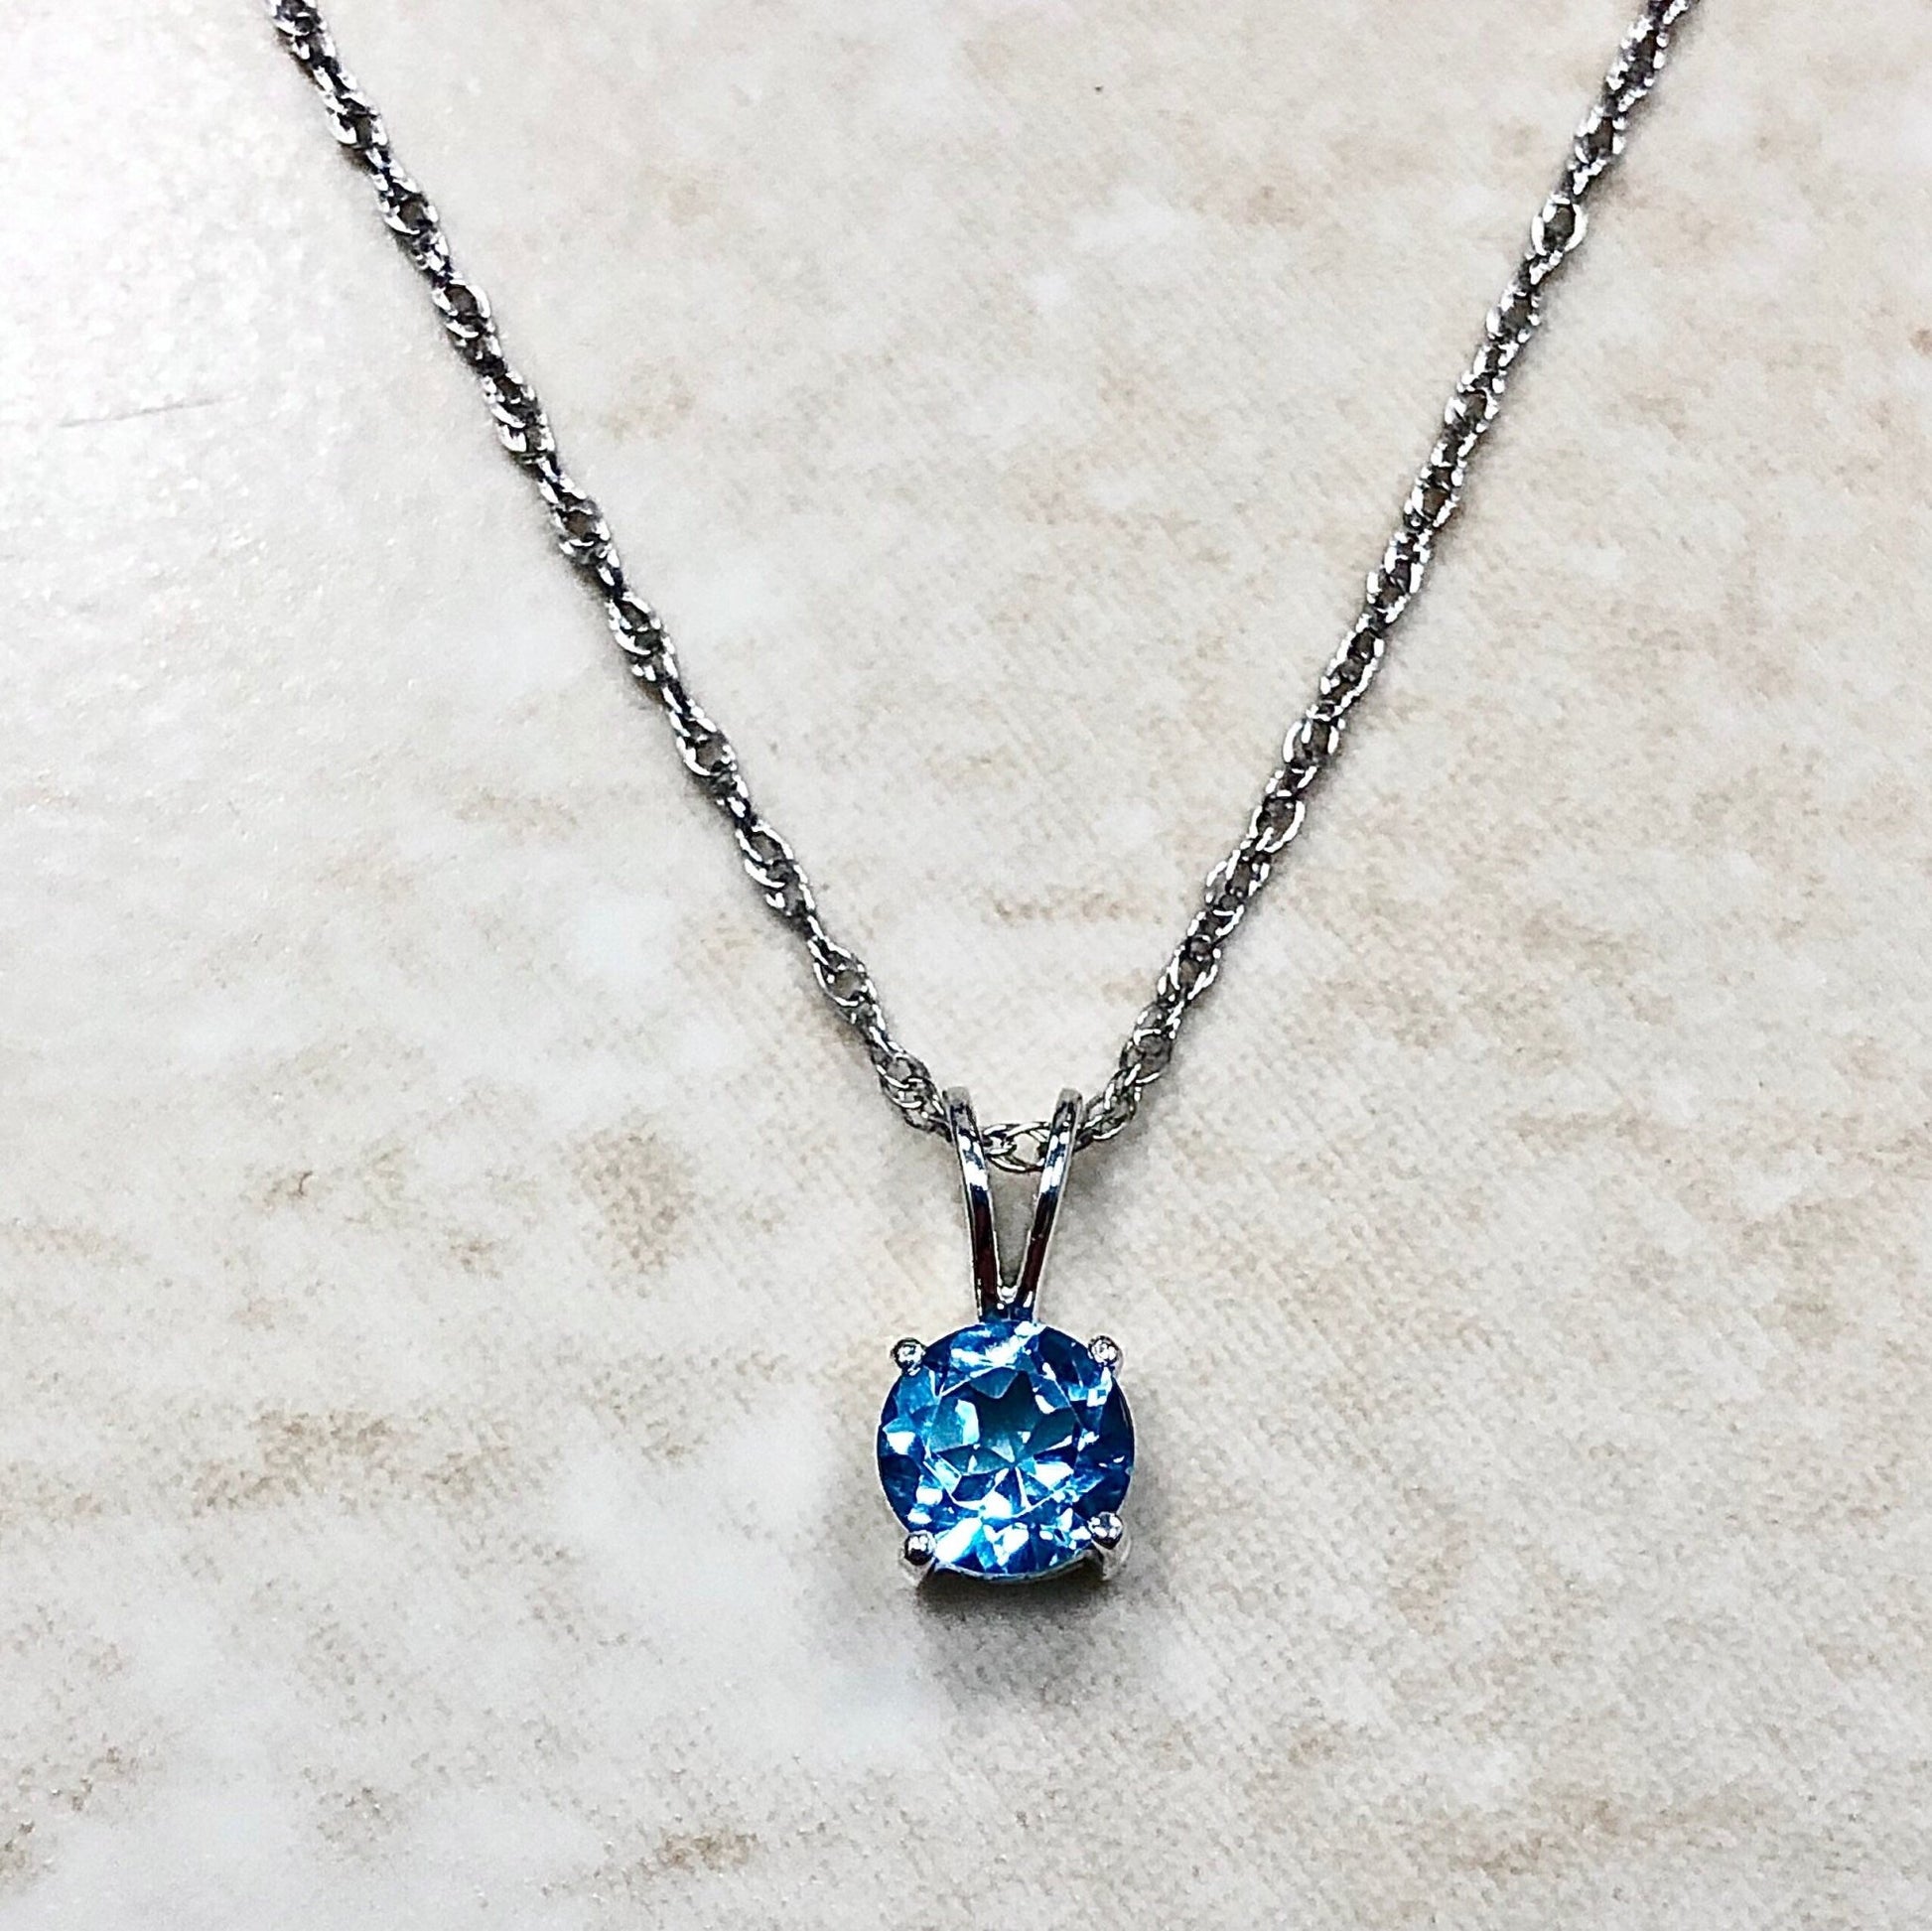 14K Round Blue Topaz Pendant Necklace - White Gold Blue Topaz Pendant - November December Birthstone - Genuine Gemstone - Birthday Gift